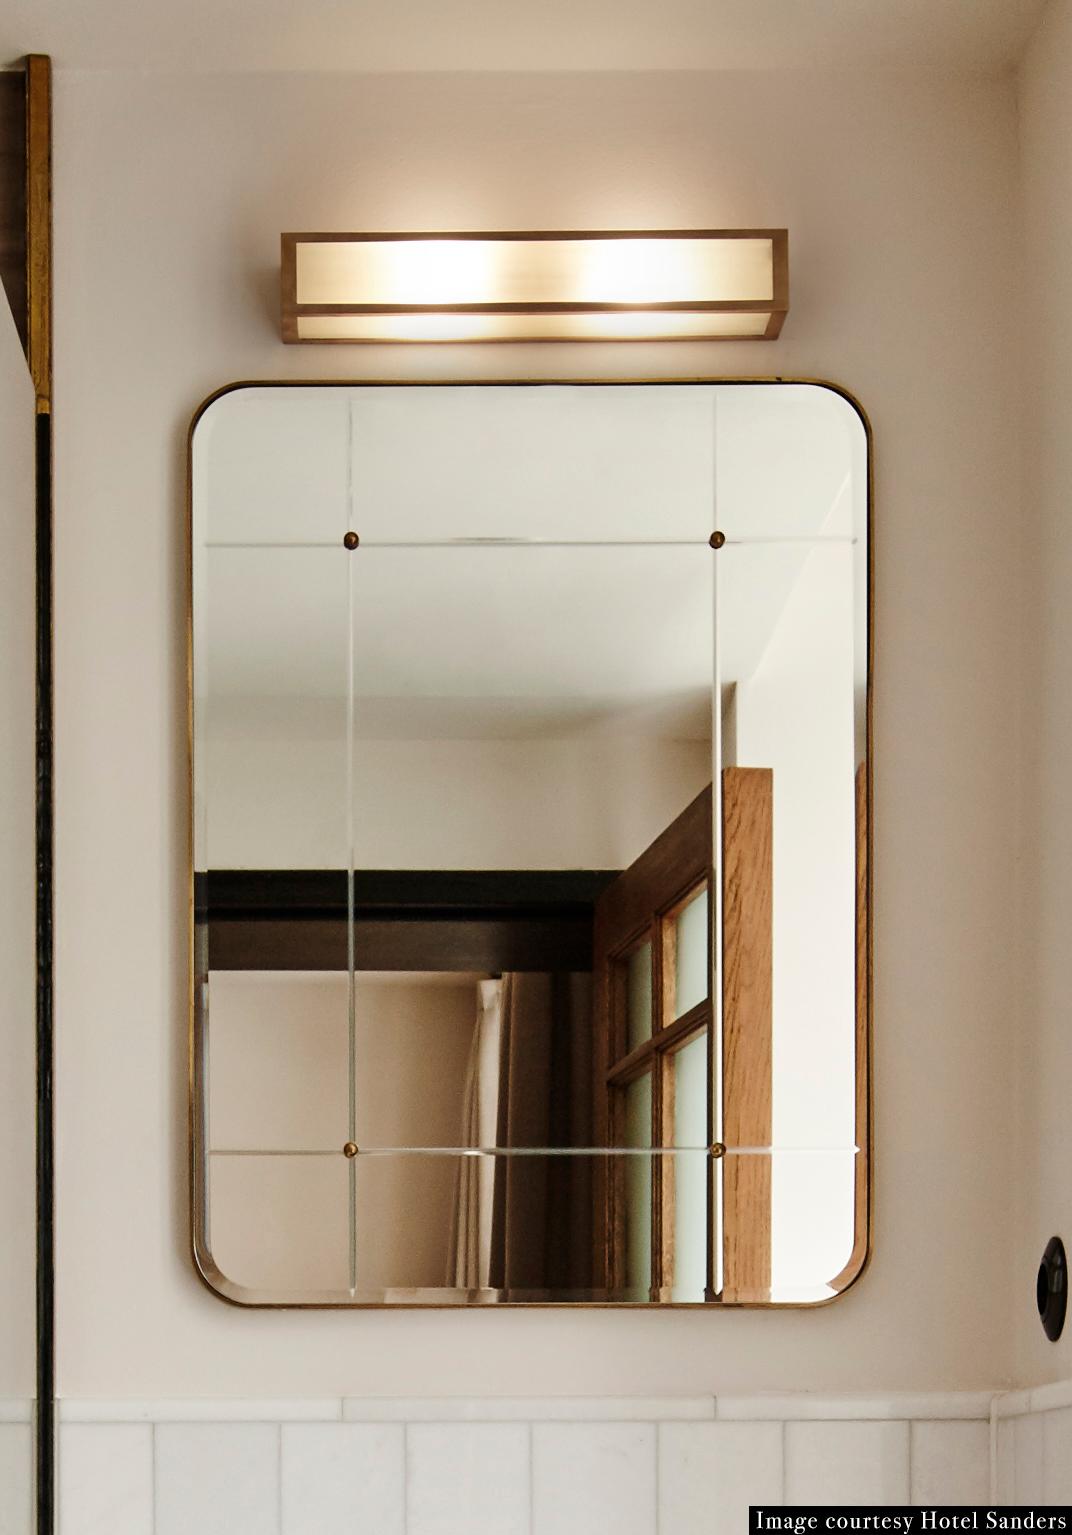 Miroir de salle de bain pour Sanders par Lind + Almond en verre taillé et laiton, avec des clous en laiton. Développé spécialement pour Sanders, le premier hôtel de luxe de Copenhague.

Disponible en trois tailles.

Dimensions sur mesure disponibles.